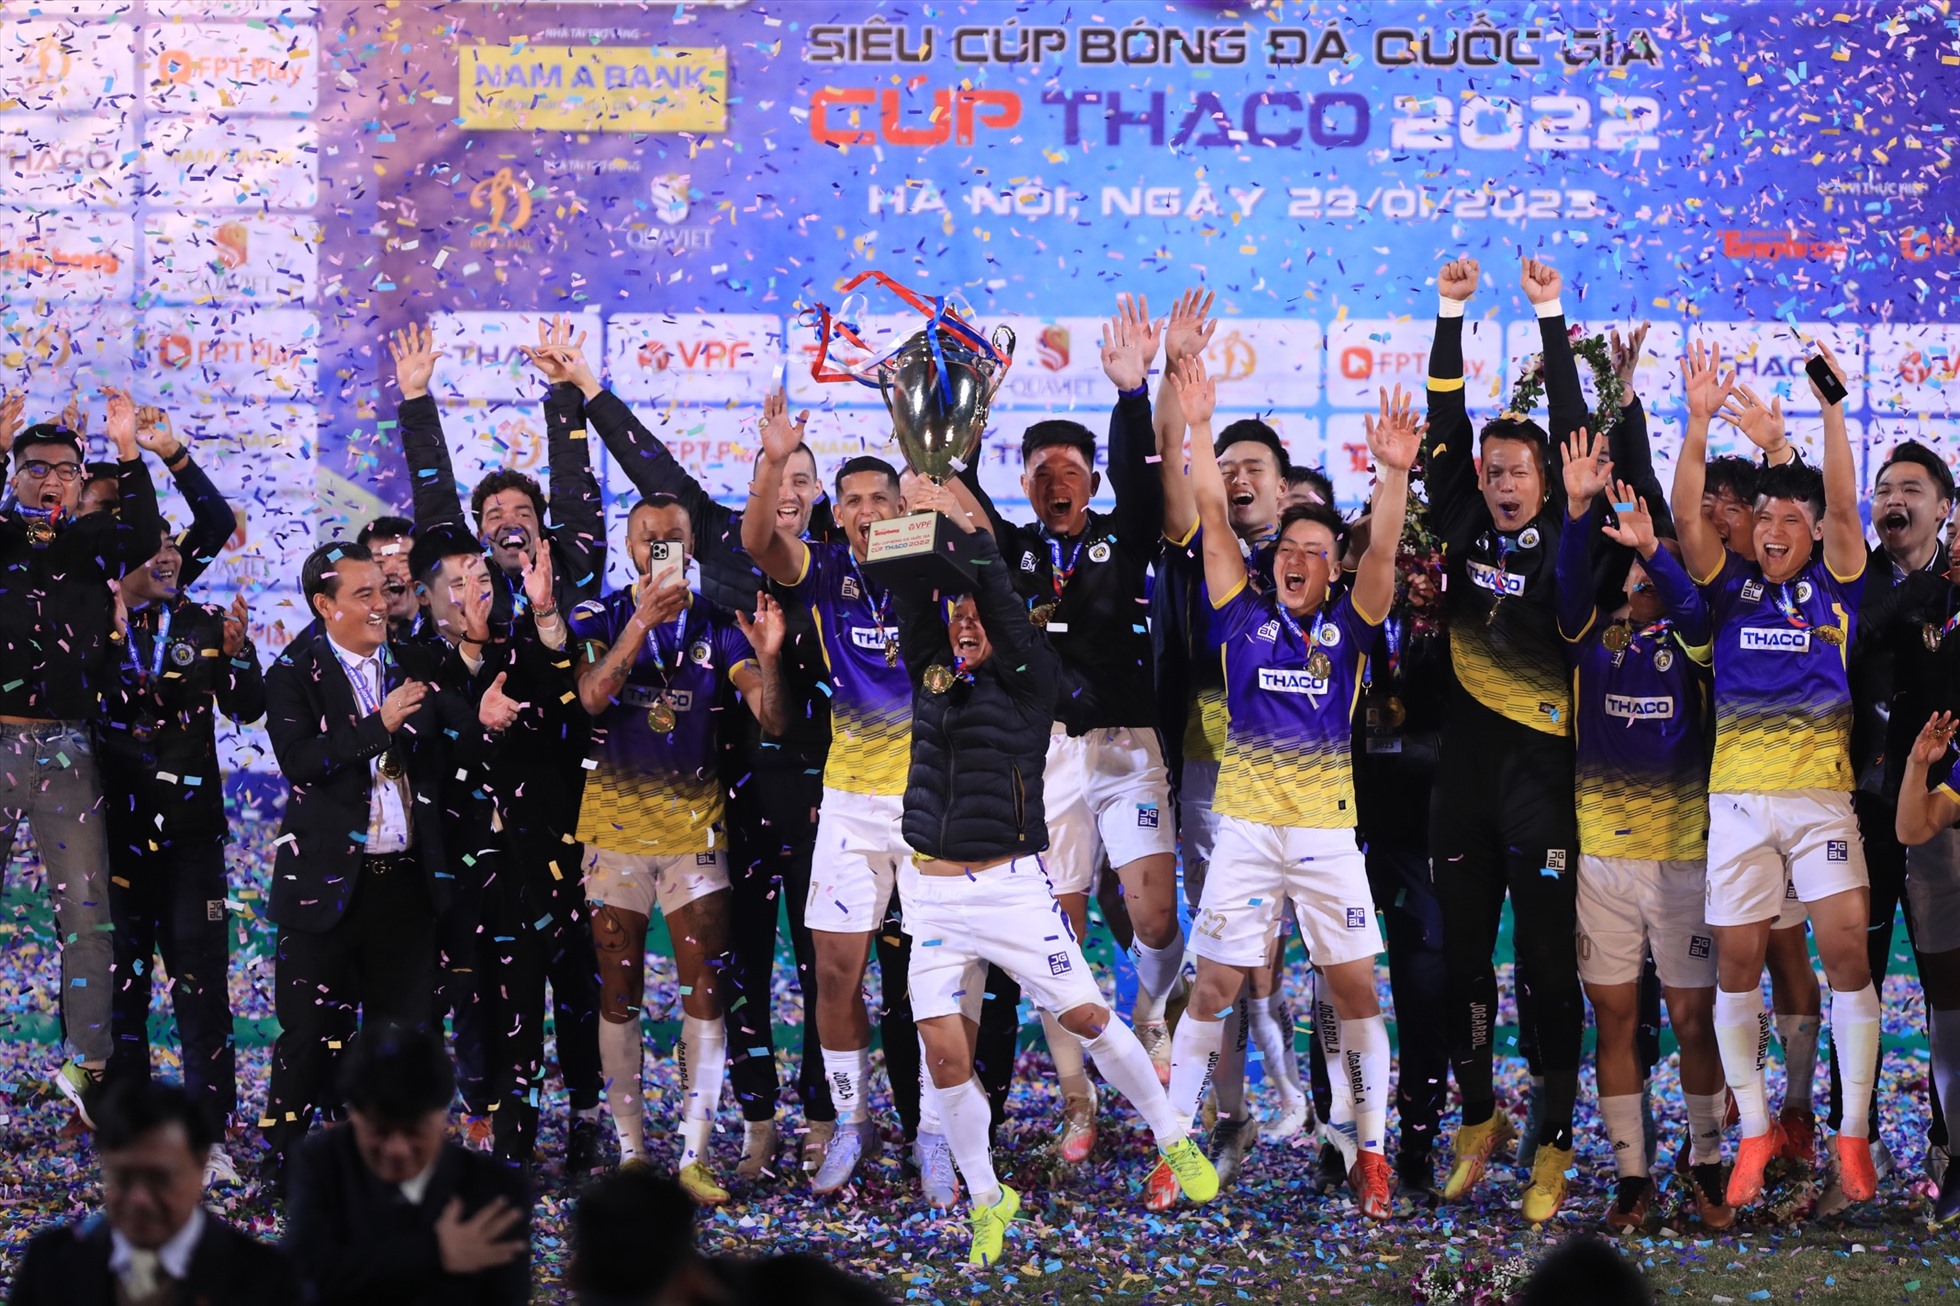 Câu lạc bộ Hà Nội sẽ có trận đấu đầu tiên tại V.League 2023 gặp Viettel vào ngày 5.2 sắp tới.